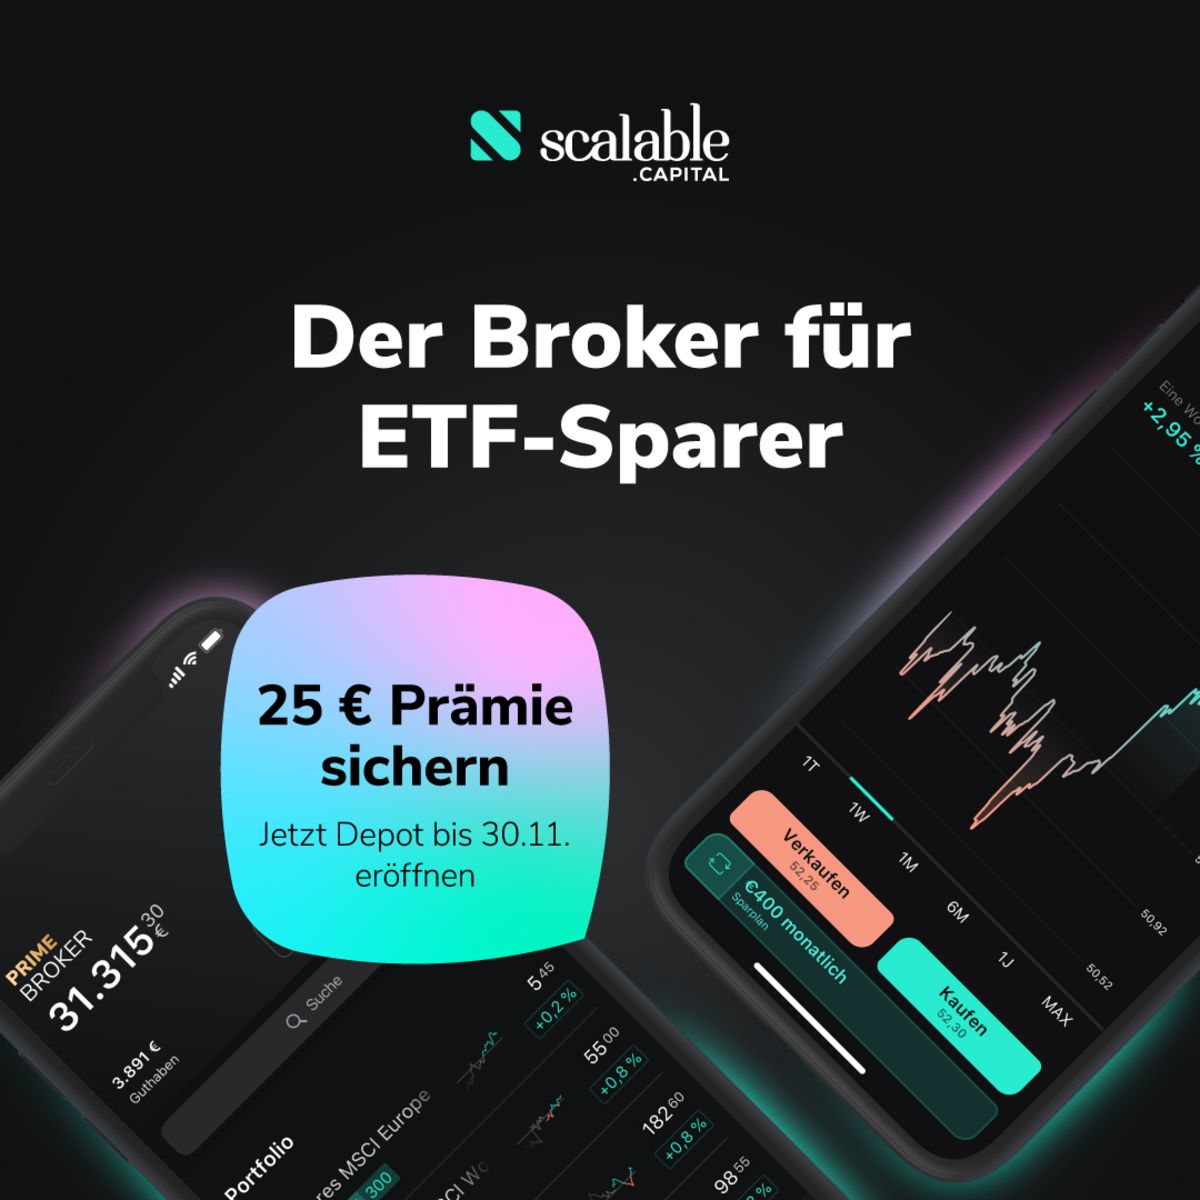 Der Broker für ETF-Sparer – Jetzt 25 € Prämie sichern ...